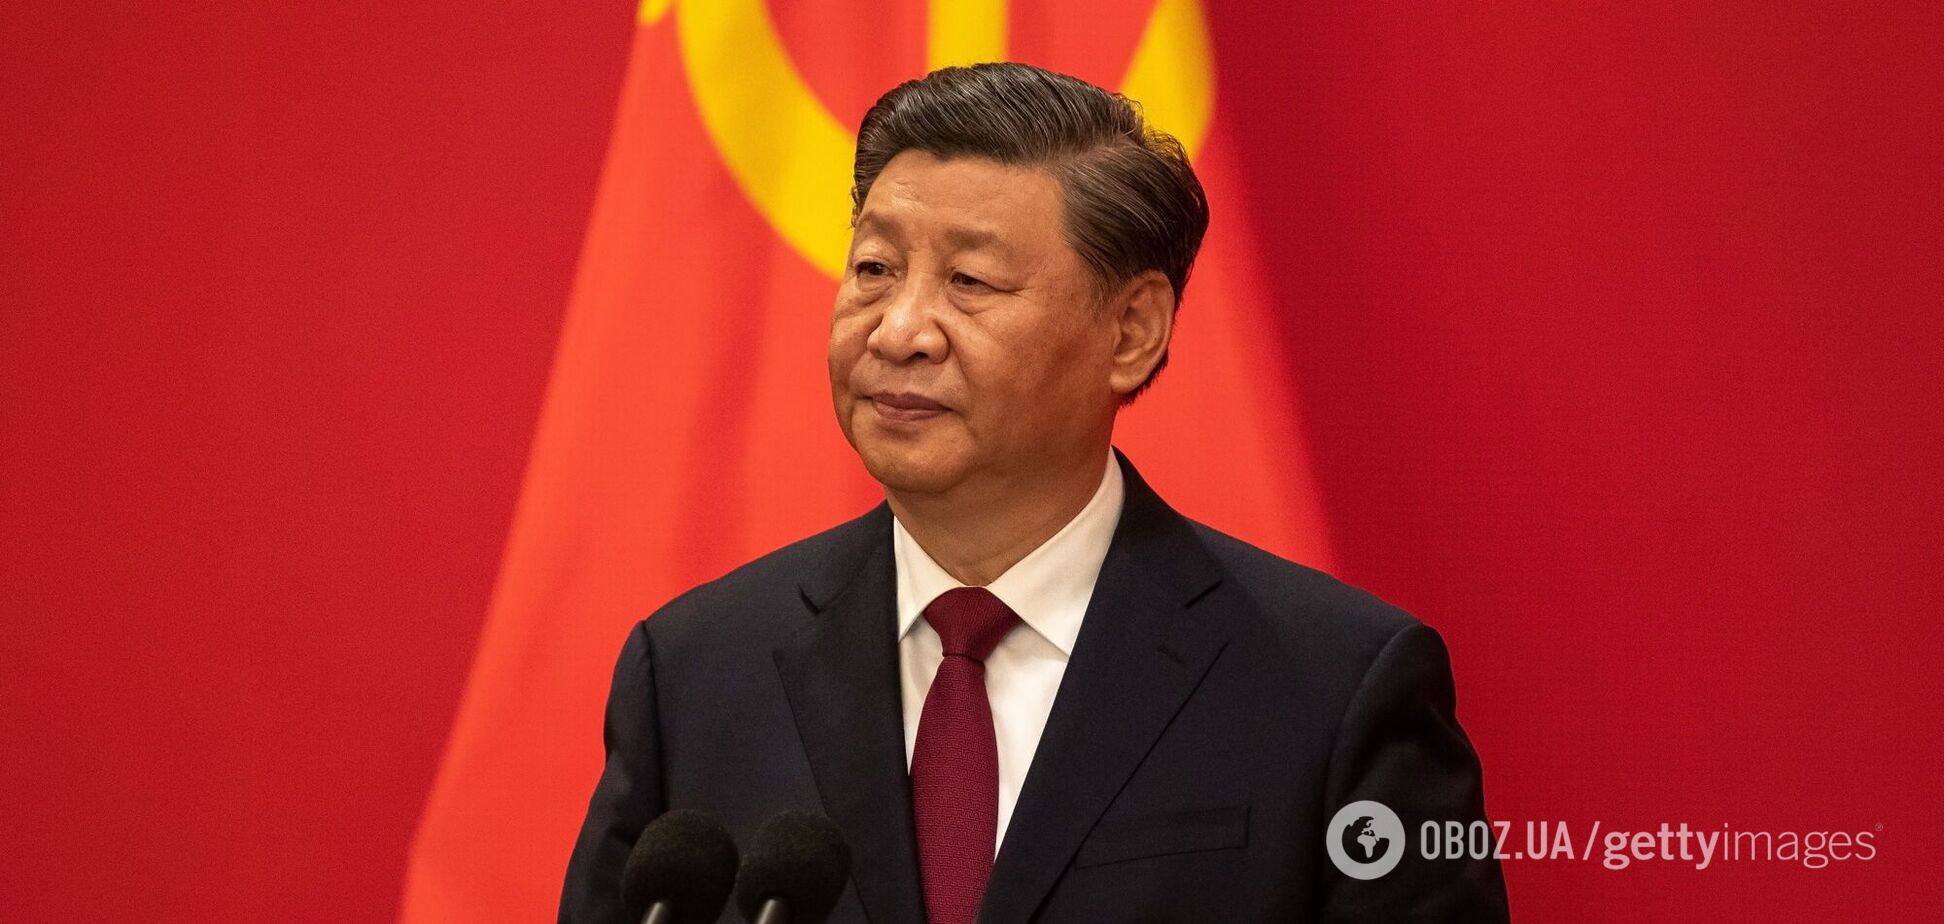 Китай ‘раскачивает’ Европу через пророссийское ‘окно’: что стоит за визитом лидера КНР в Венгрию и Сербию